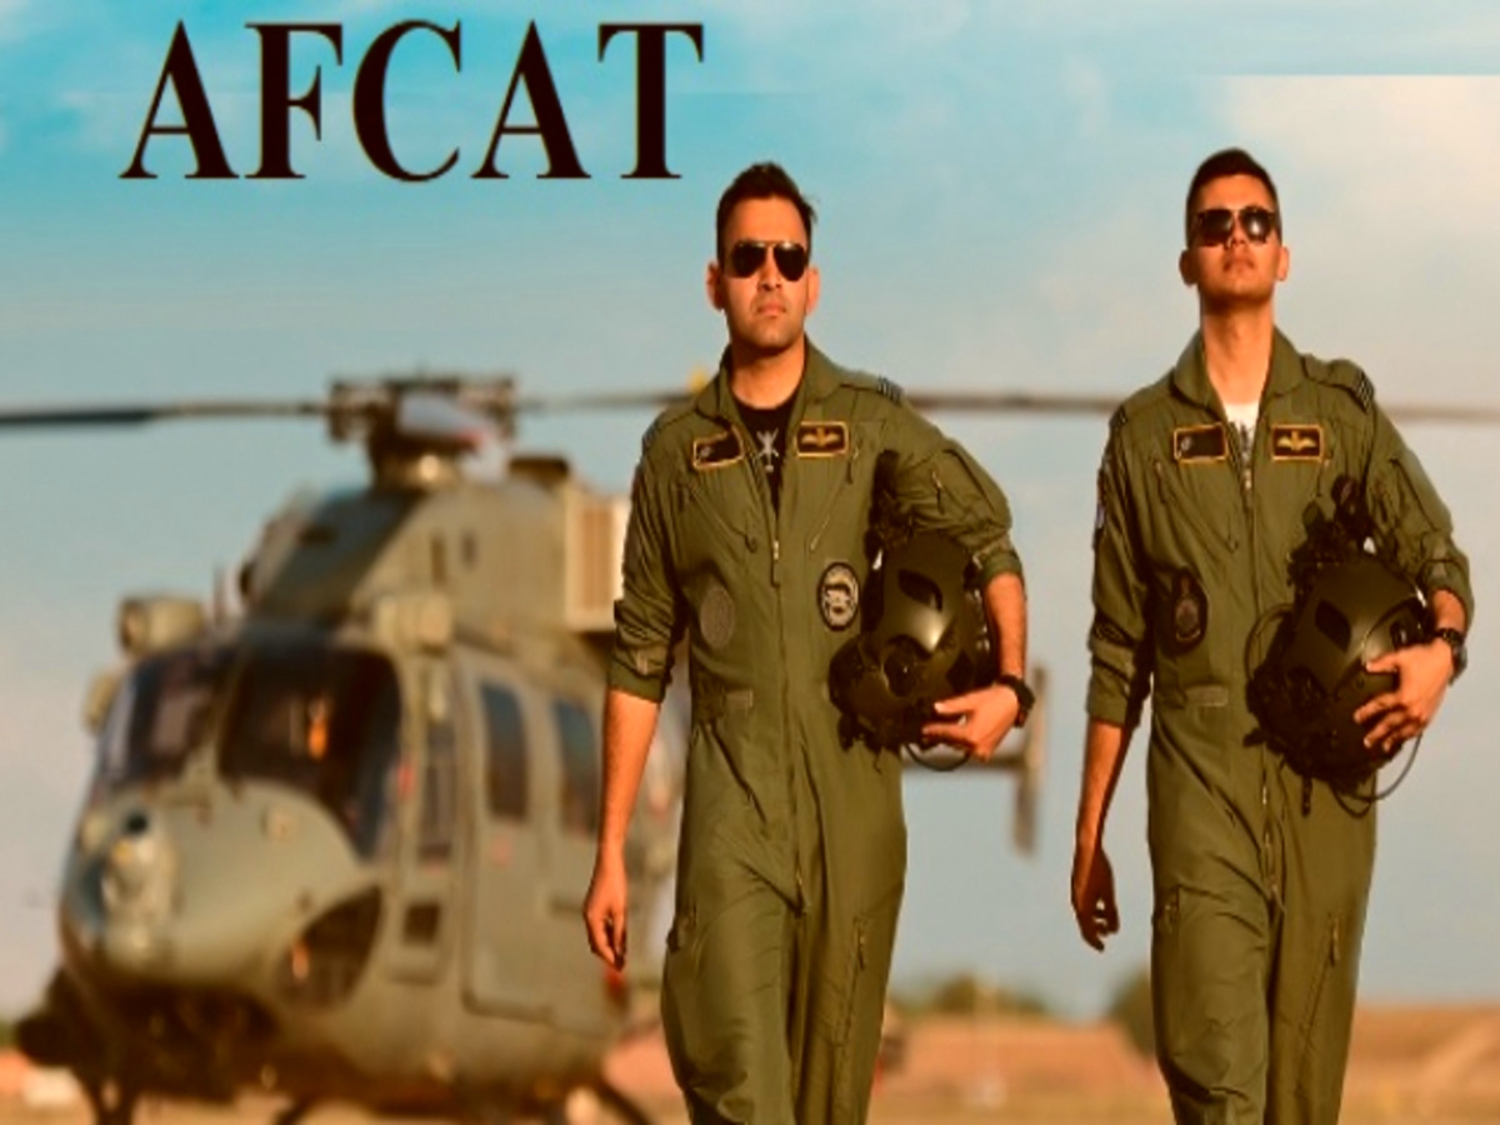 AFCAT 2: एयर फोर्स कॉमन एडमिशन टेस्ट 2 का समय नजदीक, यहाँ से डाउनलोड करें प्रवेश पत्र